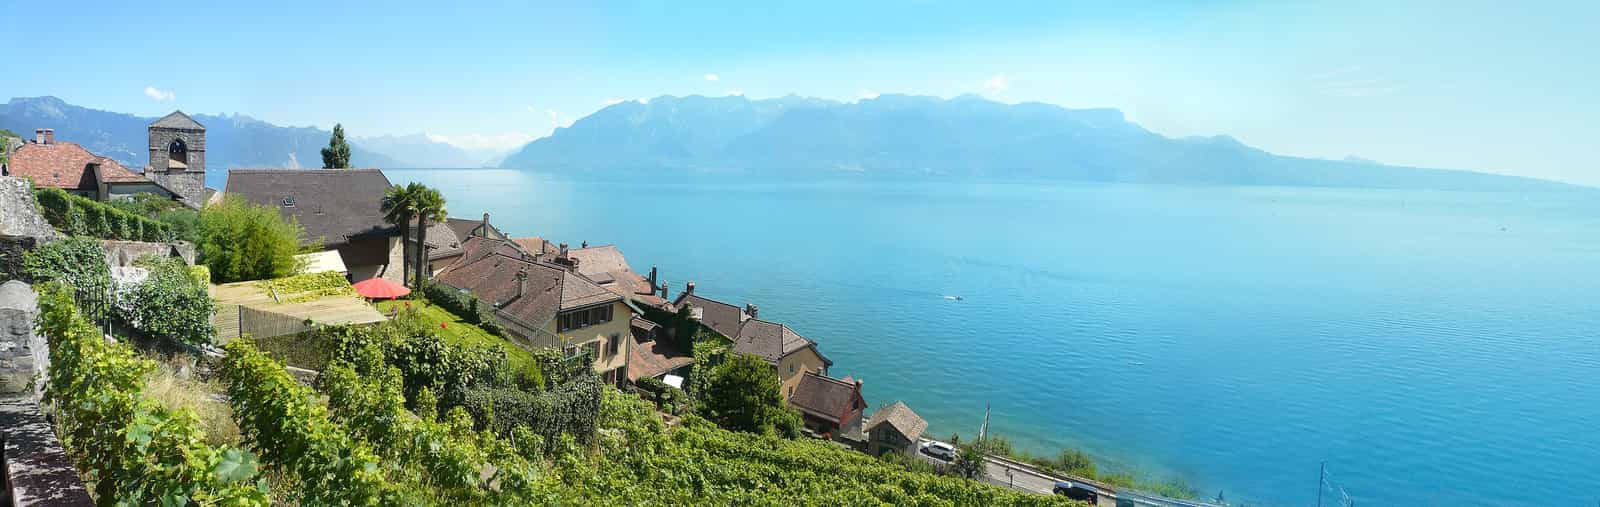 Le village suisse de Saint-Saphorin et son temple protestant entourés des coteaux de Lavaux, au bord du lac Léman à l'ouest de Vevey, face à l'extrémité nord des Alpes françaises (devant et à droite).